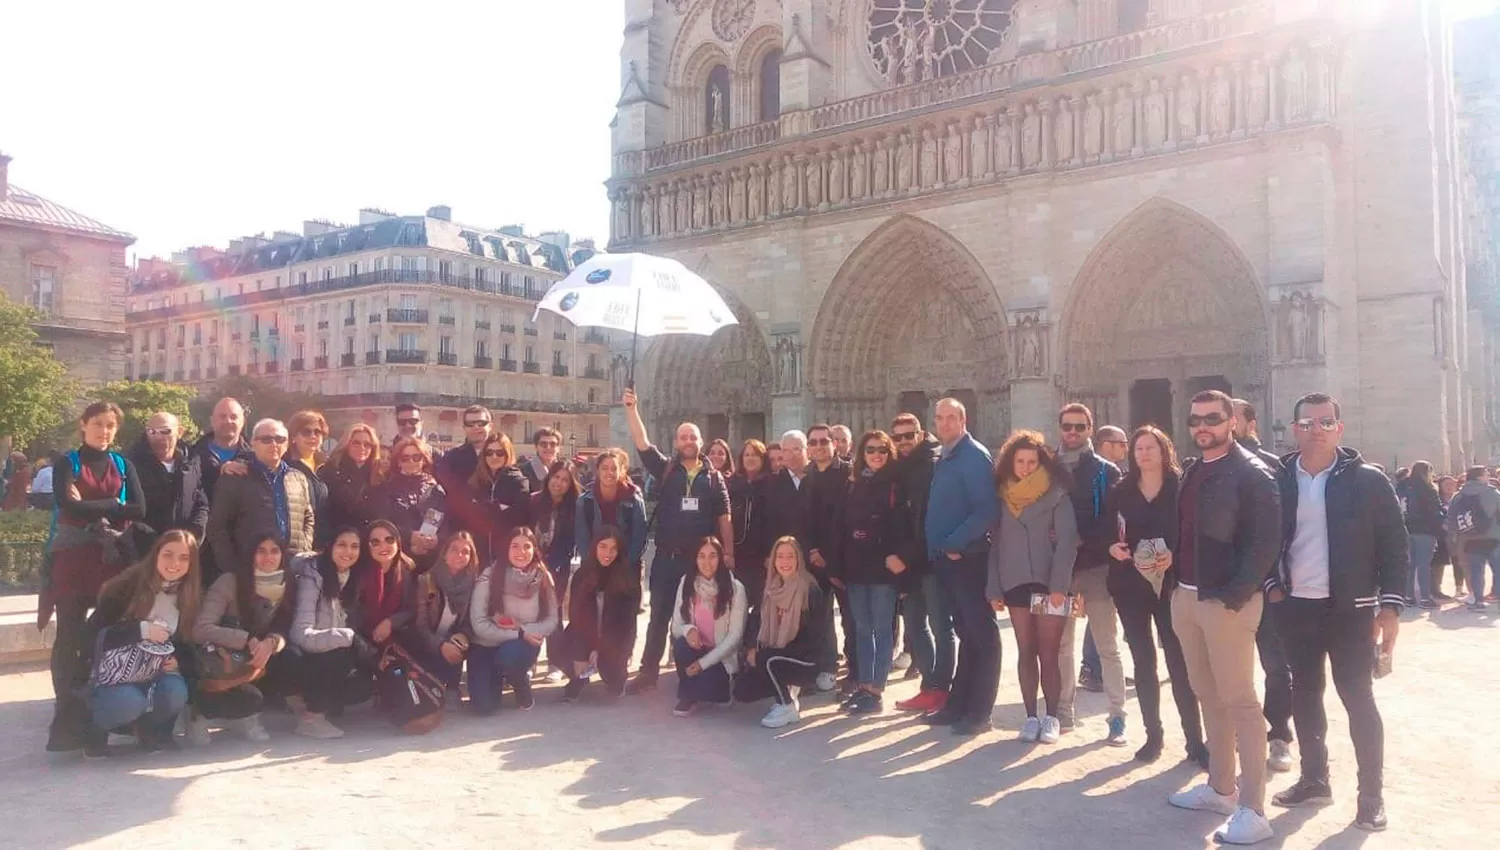 MOMENTOS ANTES DEL INCENDIO. Belén, abajo a la derecha, y el grupo de turistas que visitó la catedral de Notre Dame horas antes del incendio.